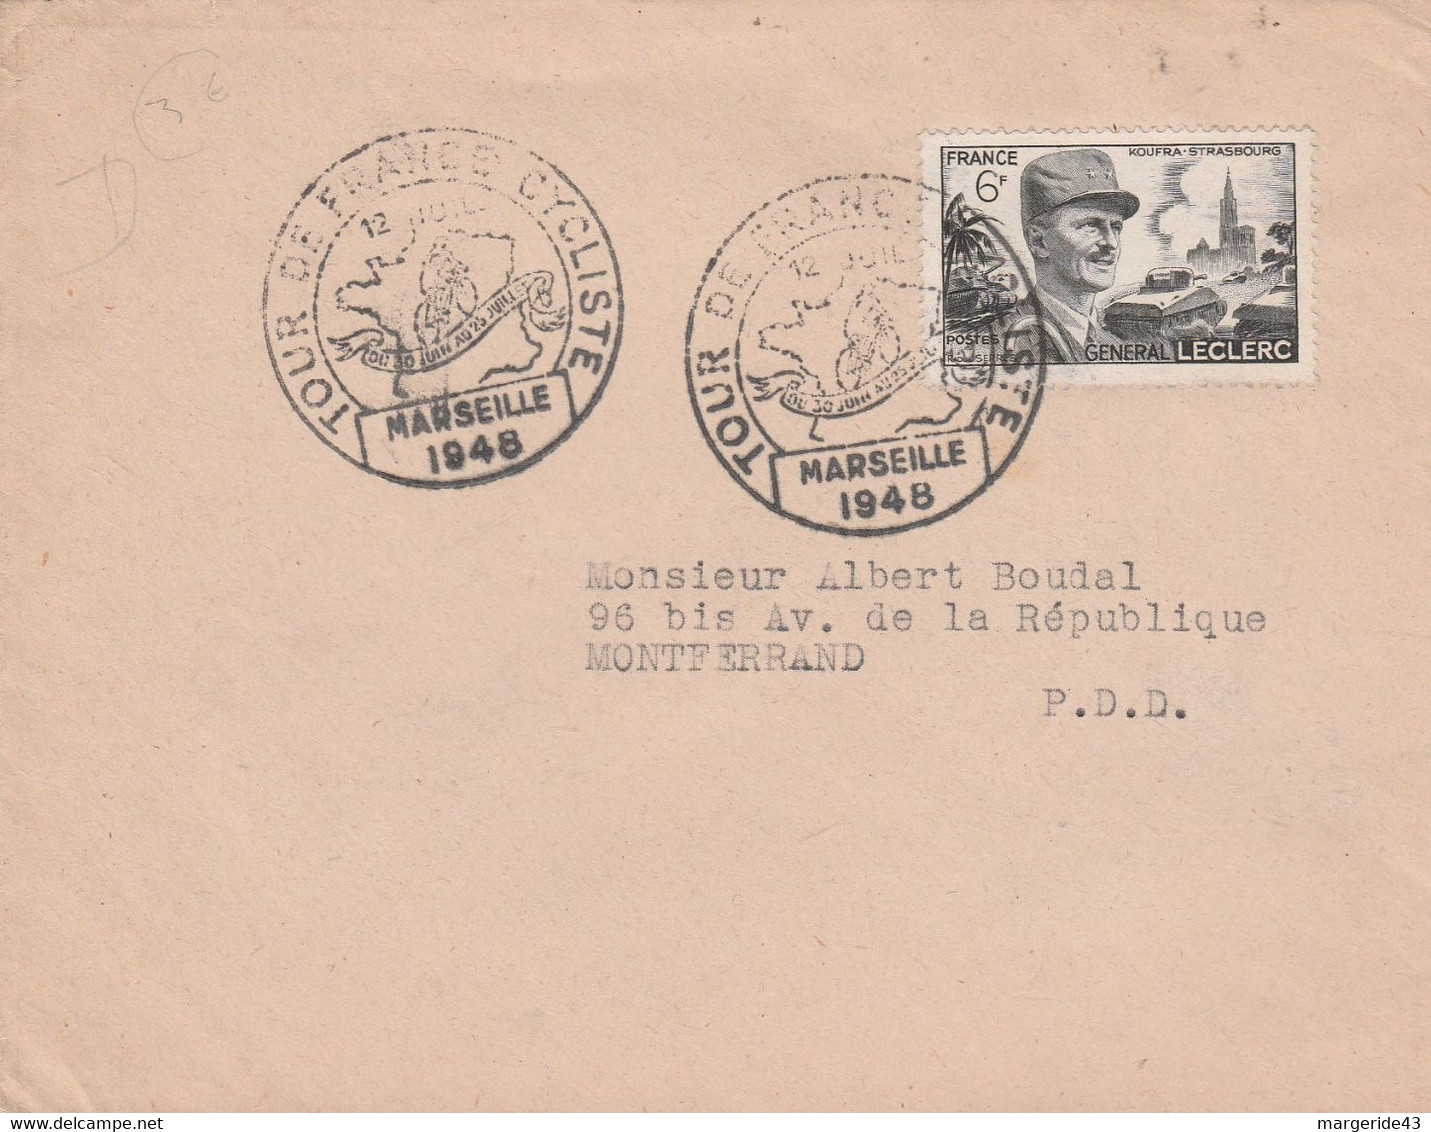 TOUR DE FRANCE CYCLISTE 1948 ETAPE DE MARSEILLE - Commemorative Postmarks